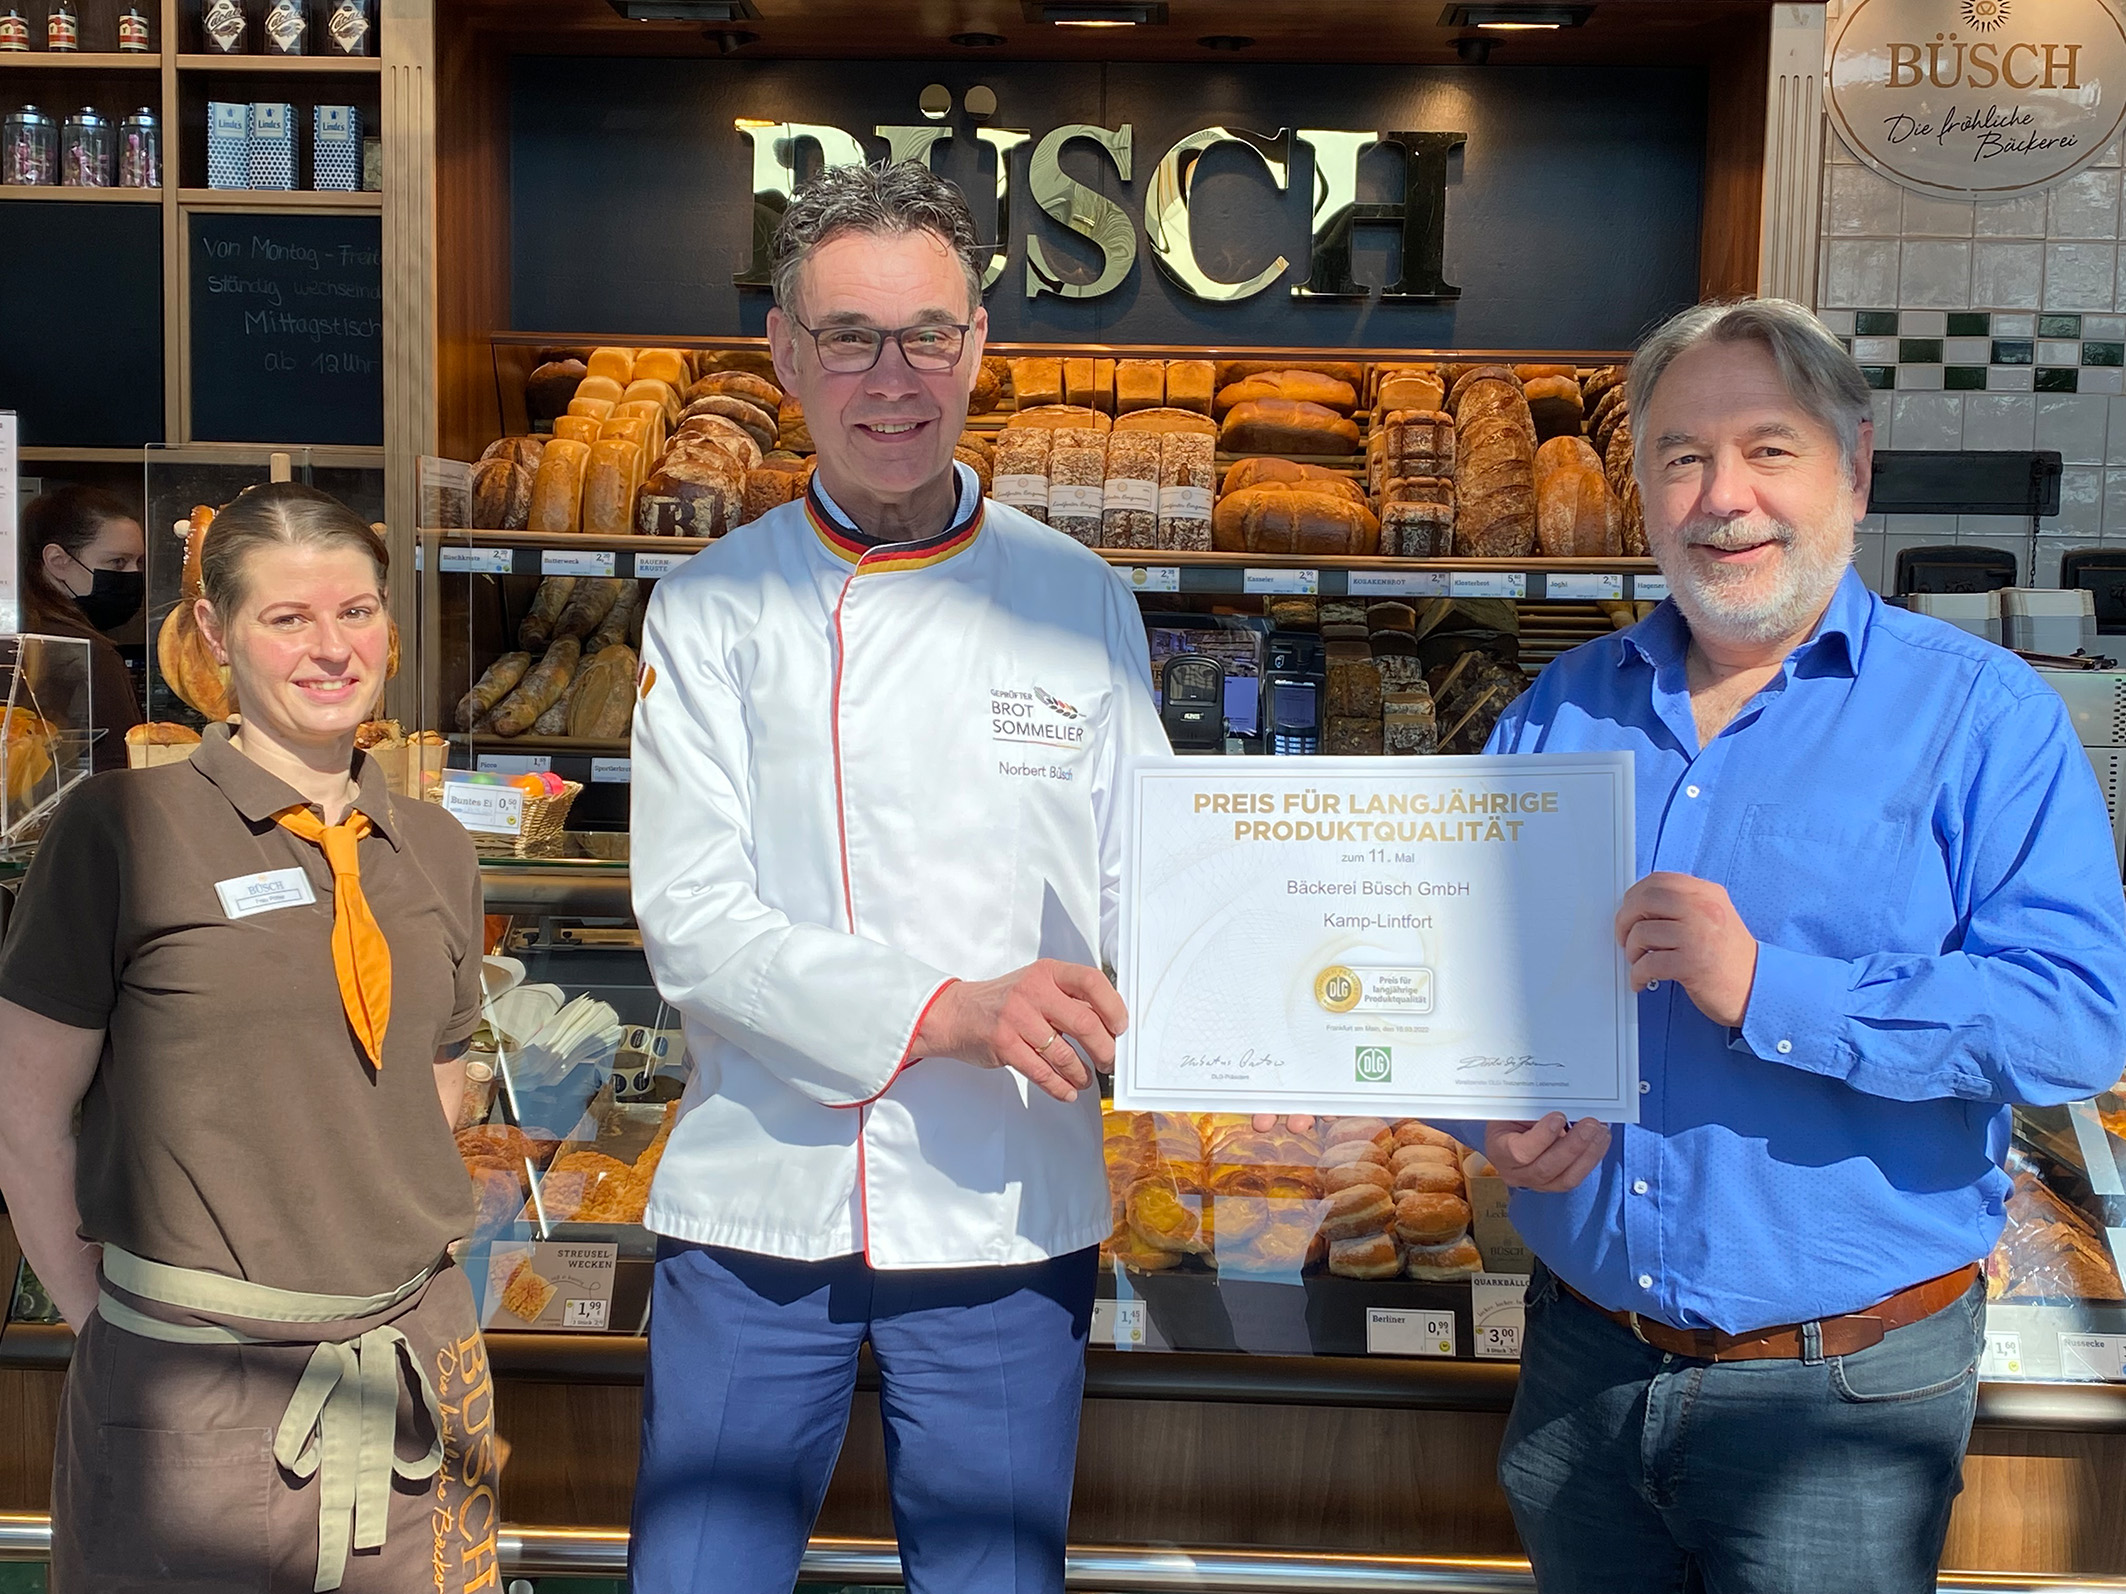 DLG vergibt „Preis für langfristige Produktqualität“: Zum elften Mal wird die Handwerksbäckerei Büsch ausgezeichnet